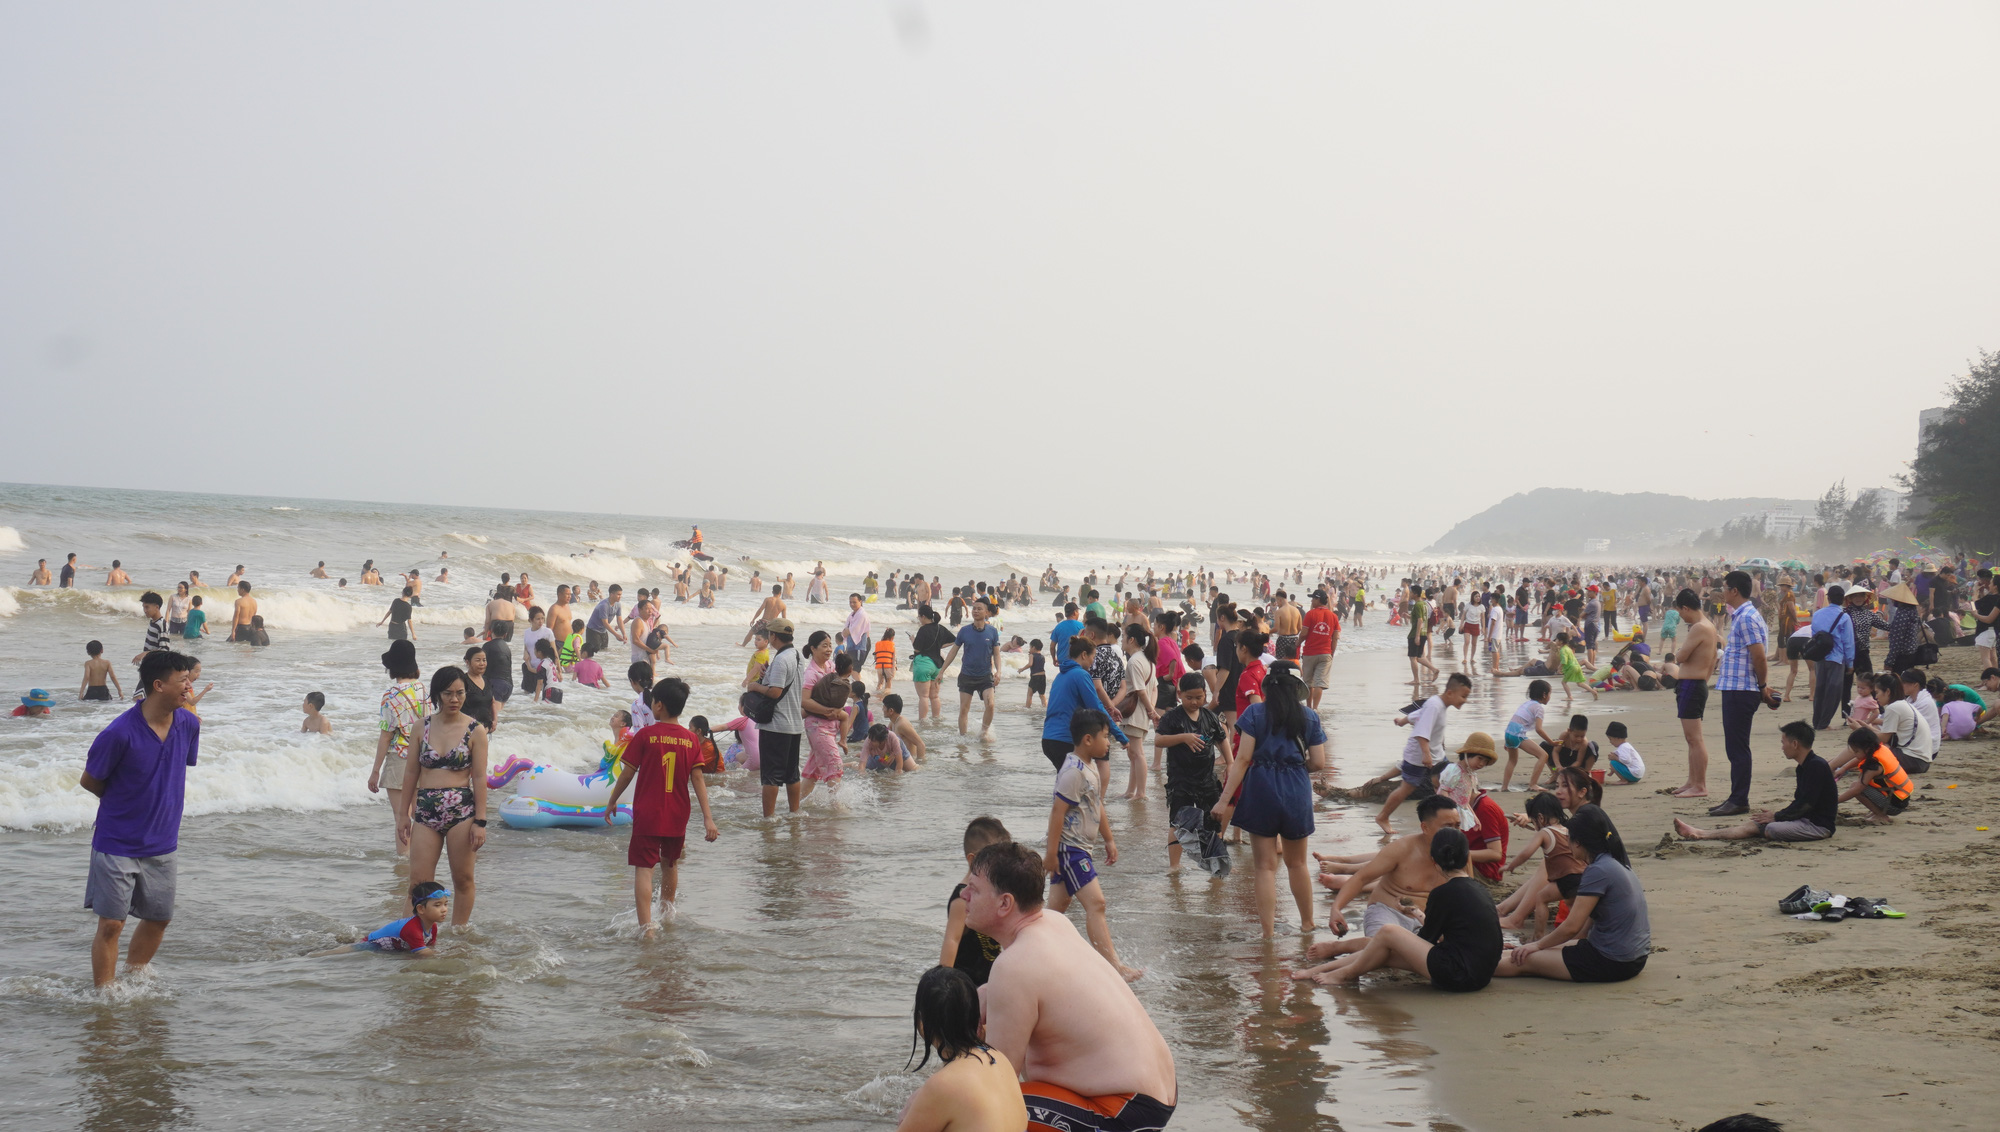 Sam Son beach tourism season starts in north-central Vietnam